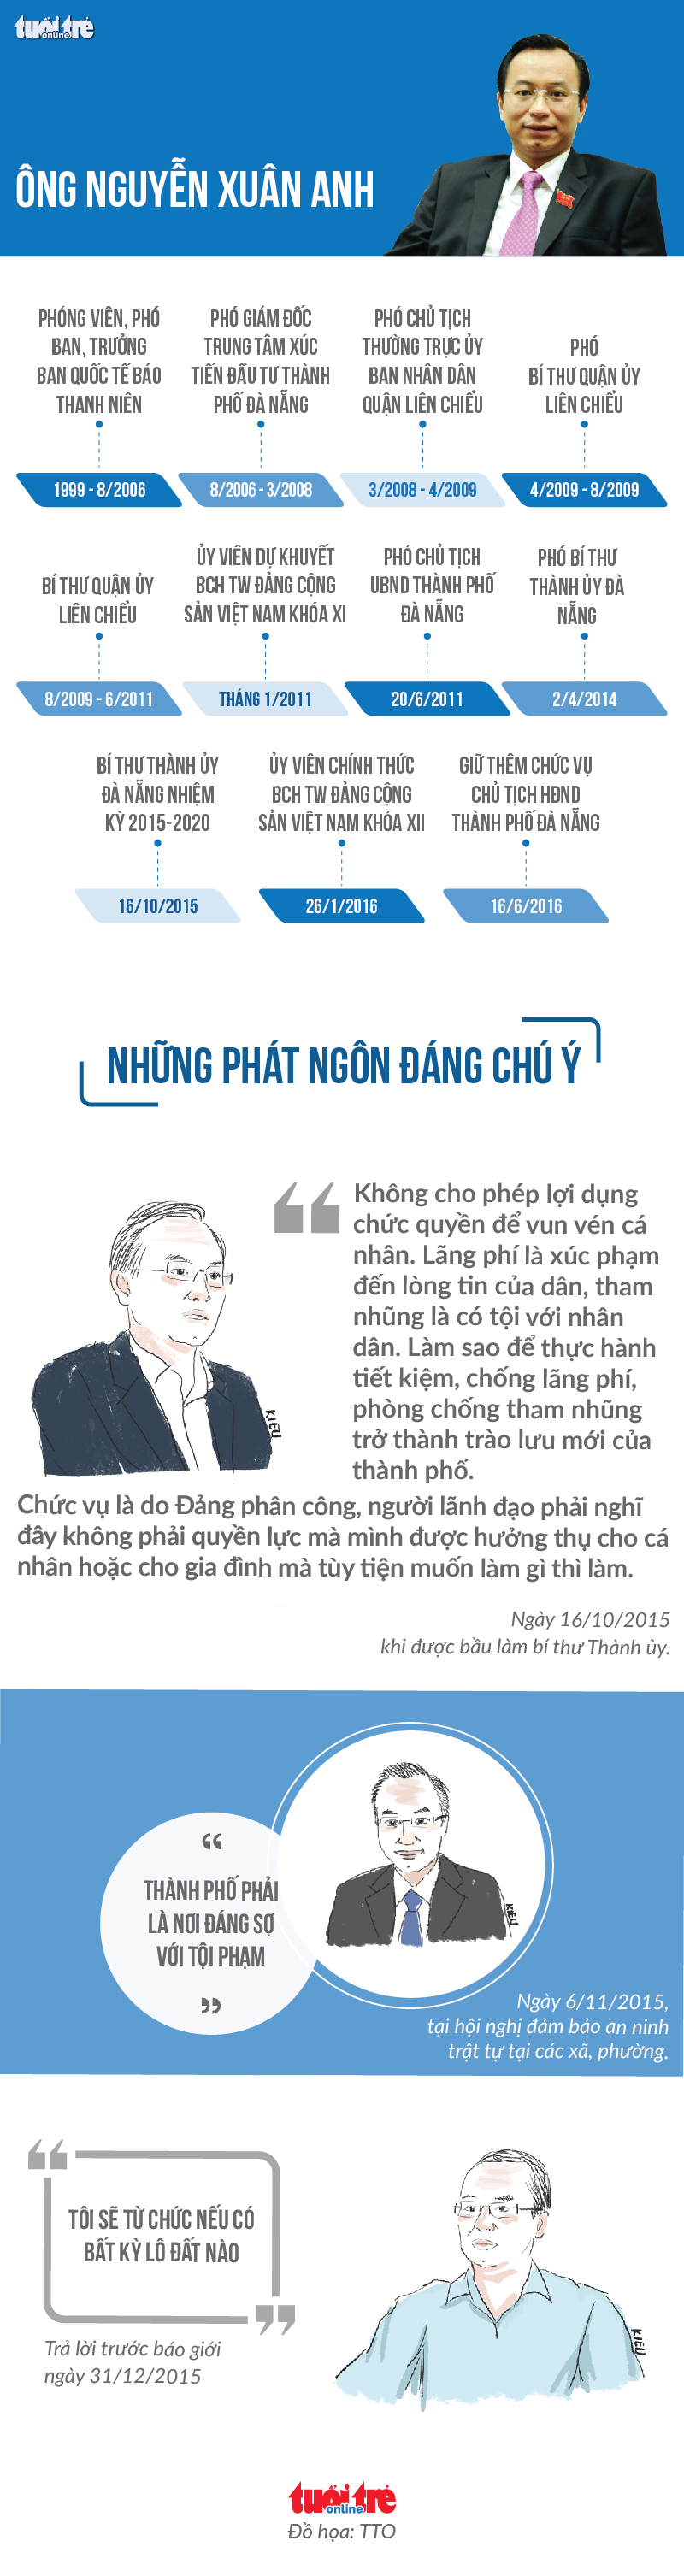 Công bố vi phạm của Bí thư Đà Nẵng Nguyễn Xuân Anh - Ảnh 3.